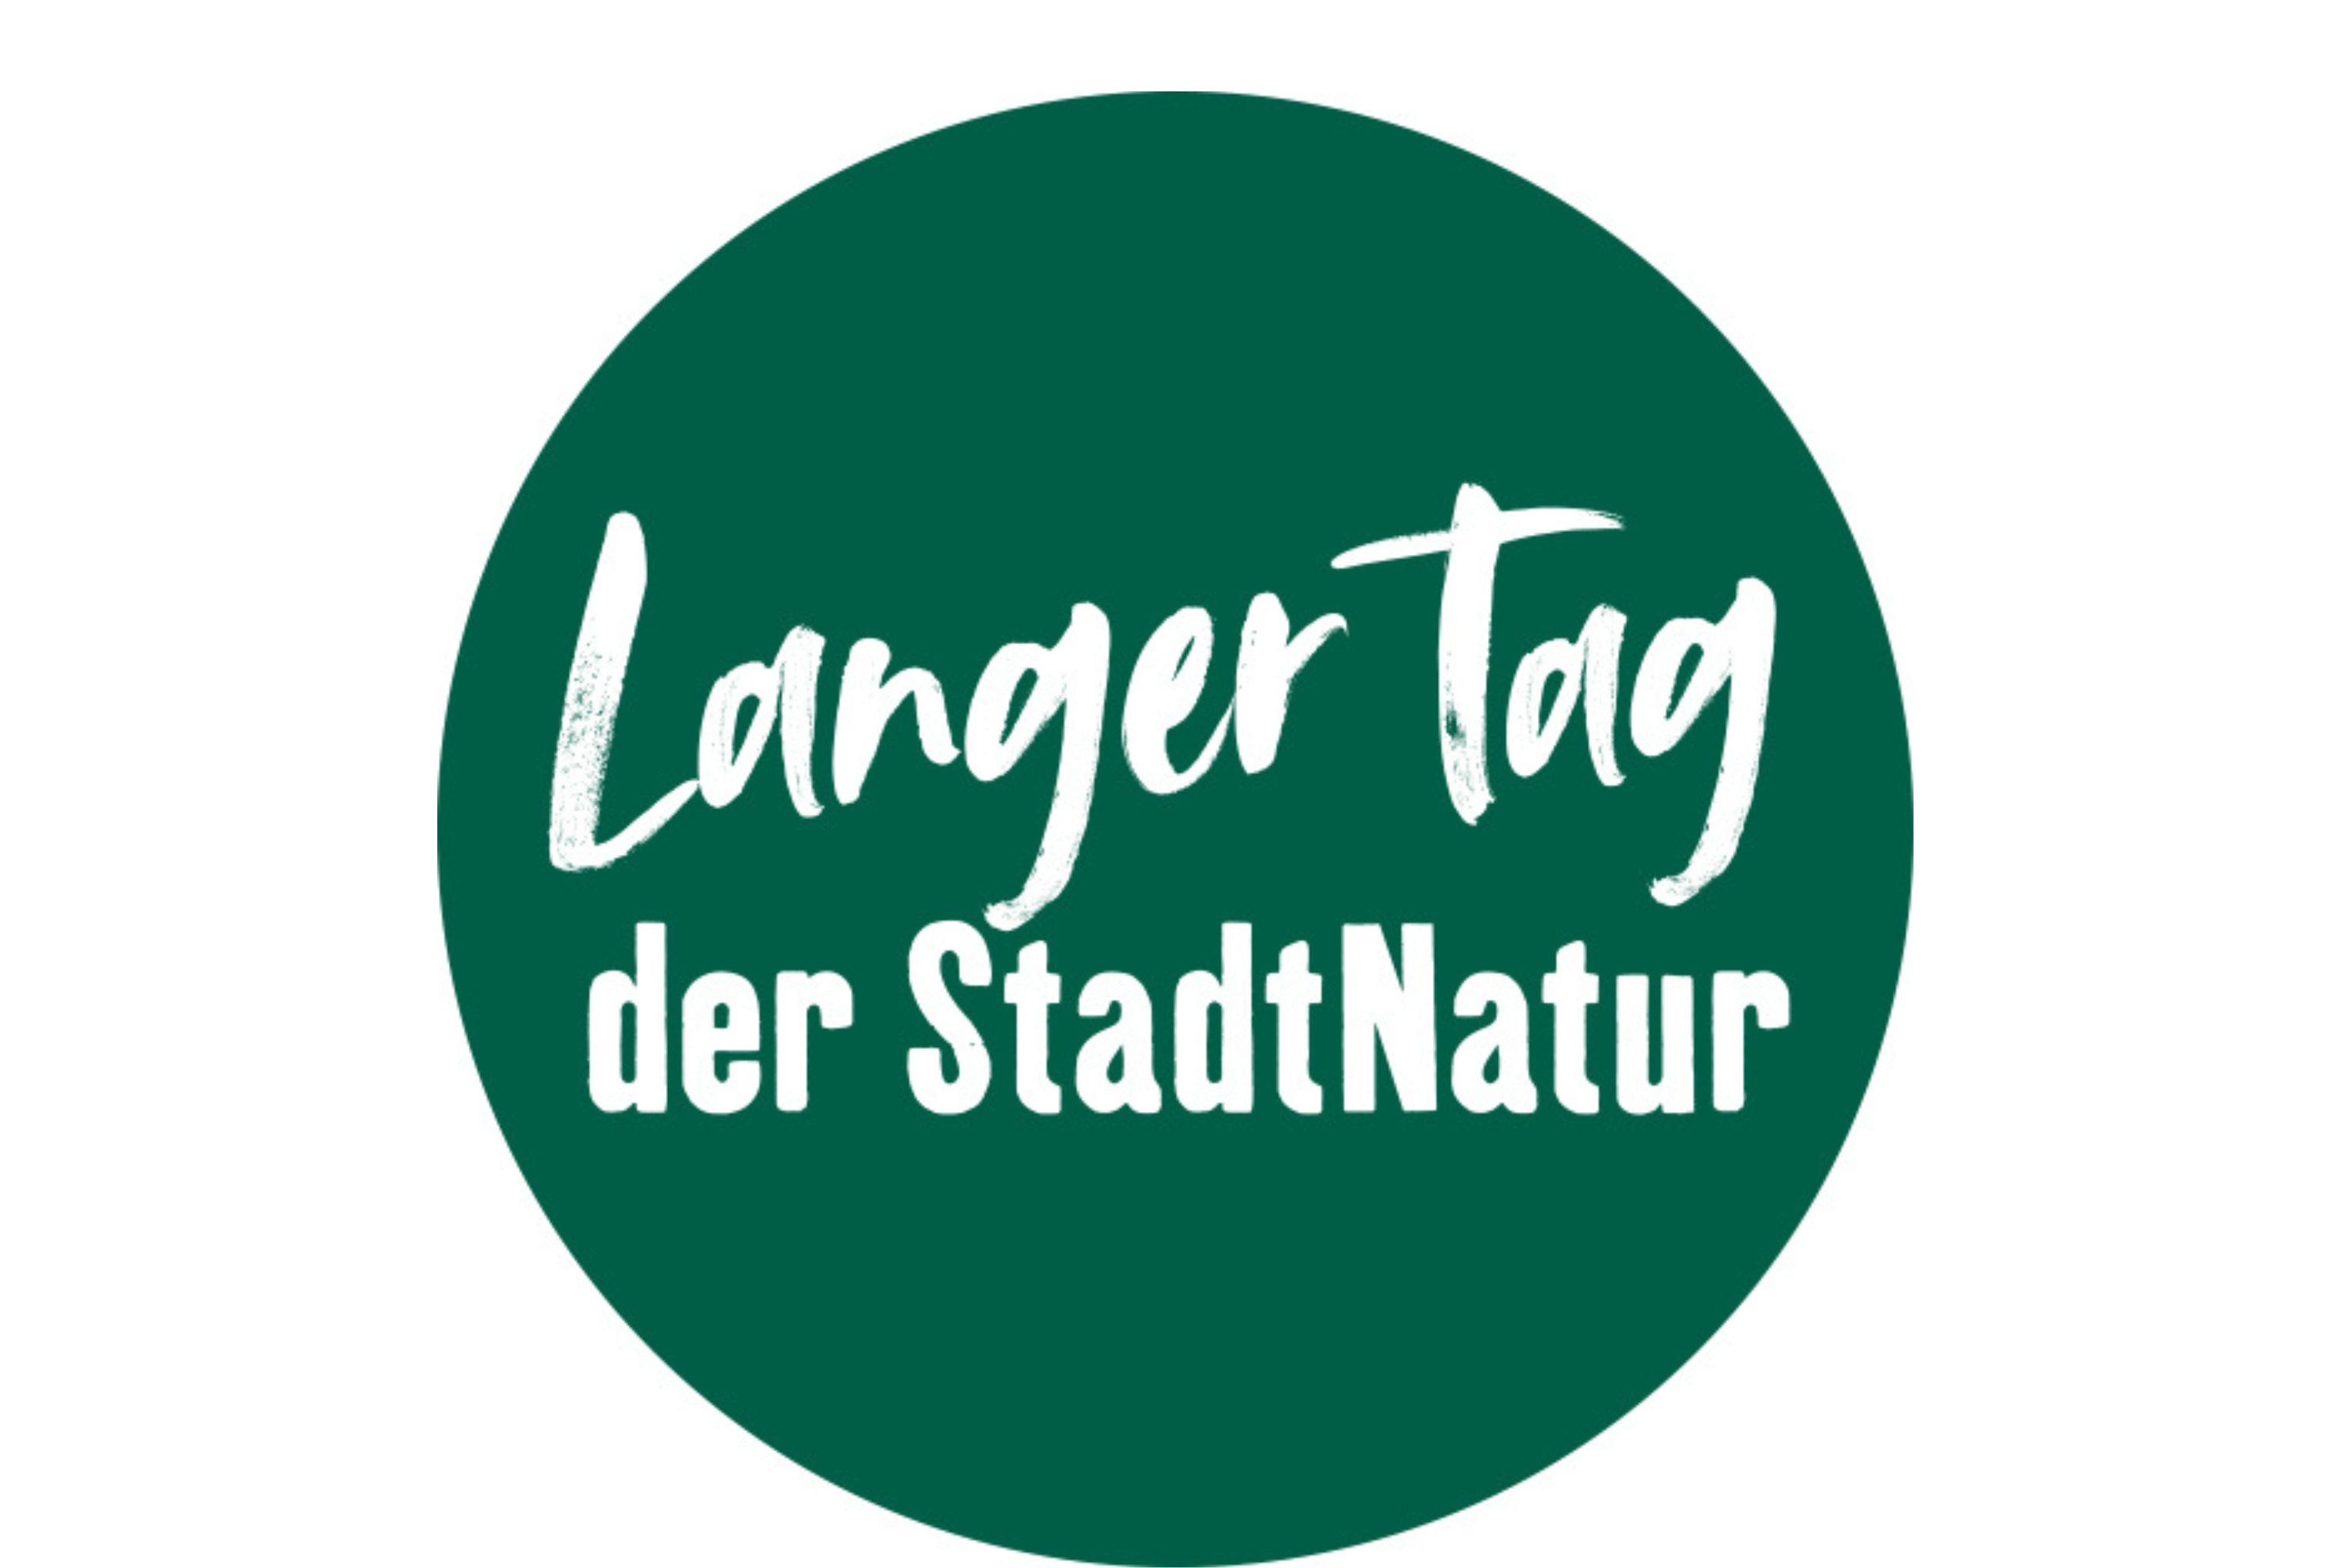 Logo der Veranstaltung; Dunkelgrüner Kreis mit Schriftzug in Weiß "Langer Tag der StadtNatur"